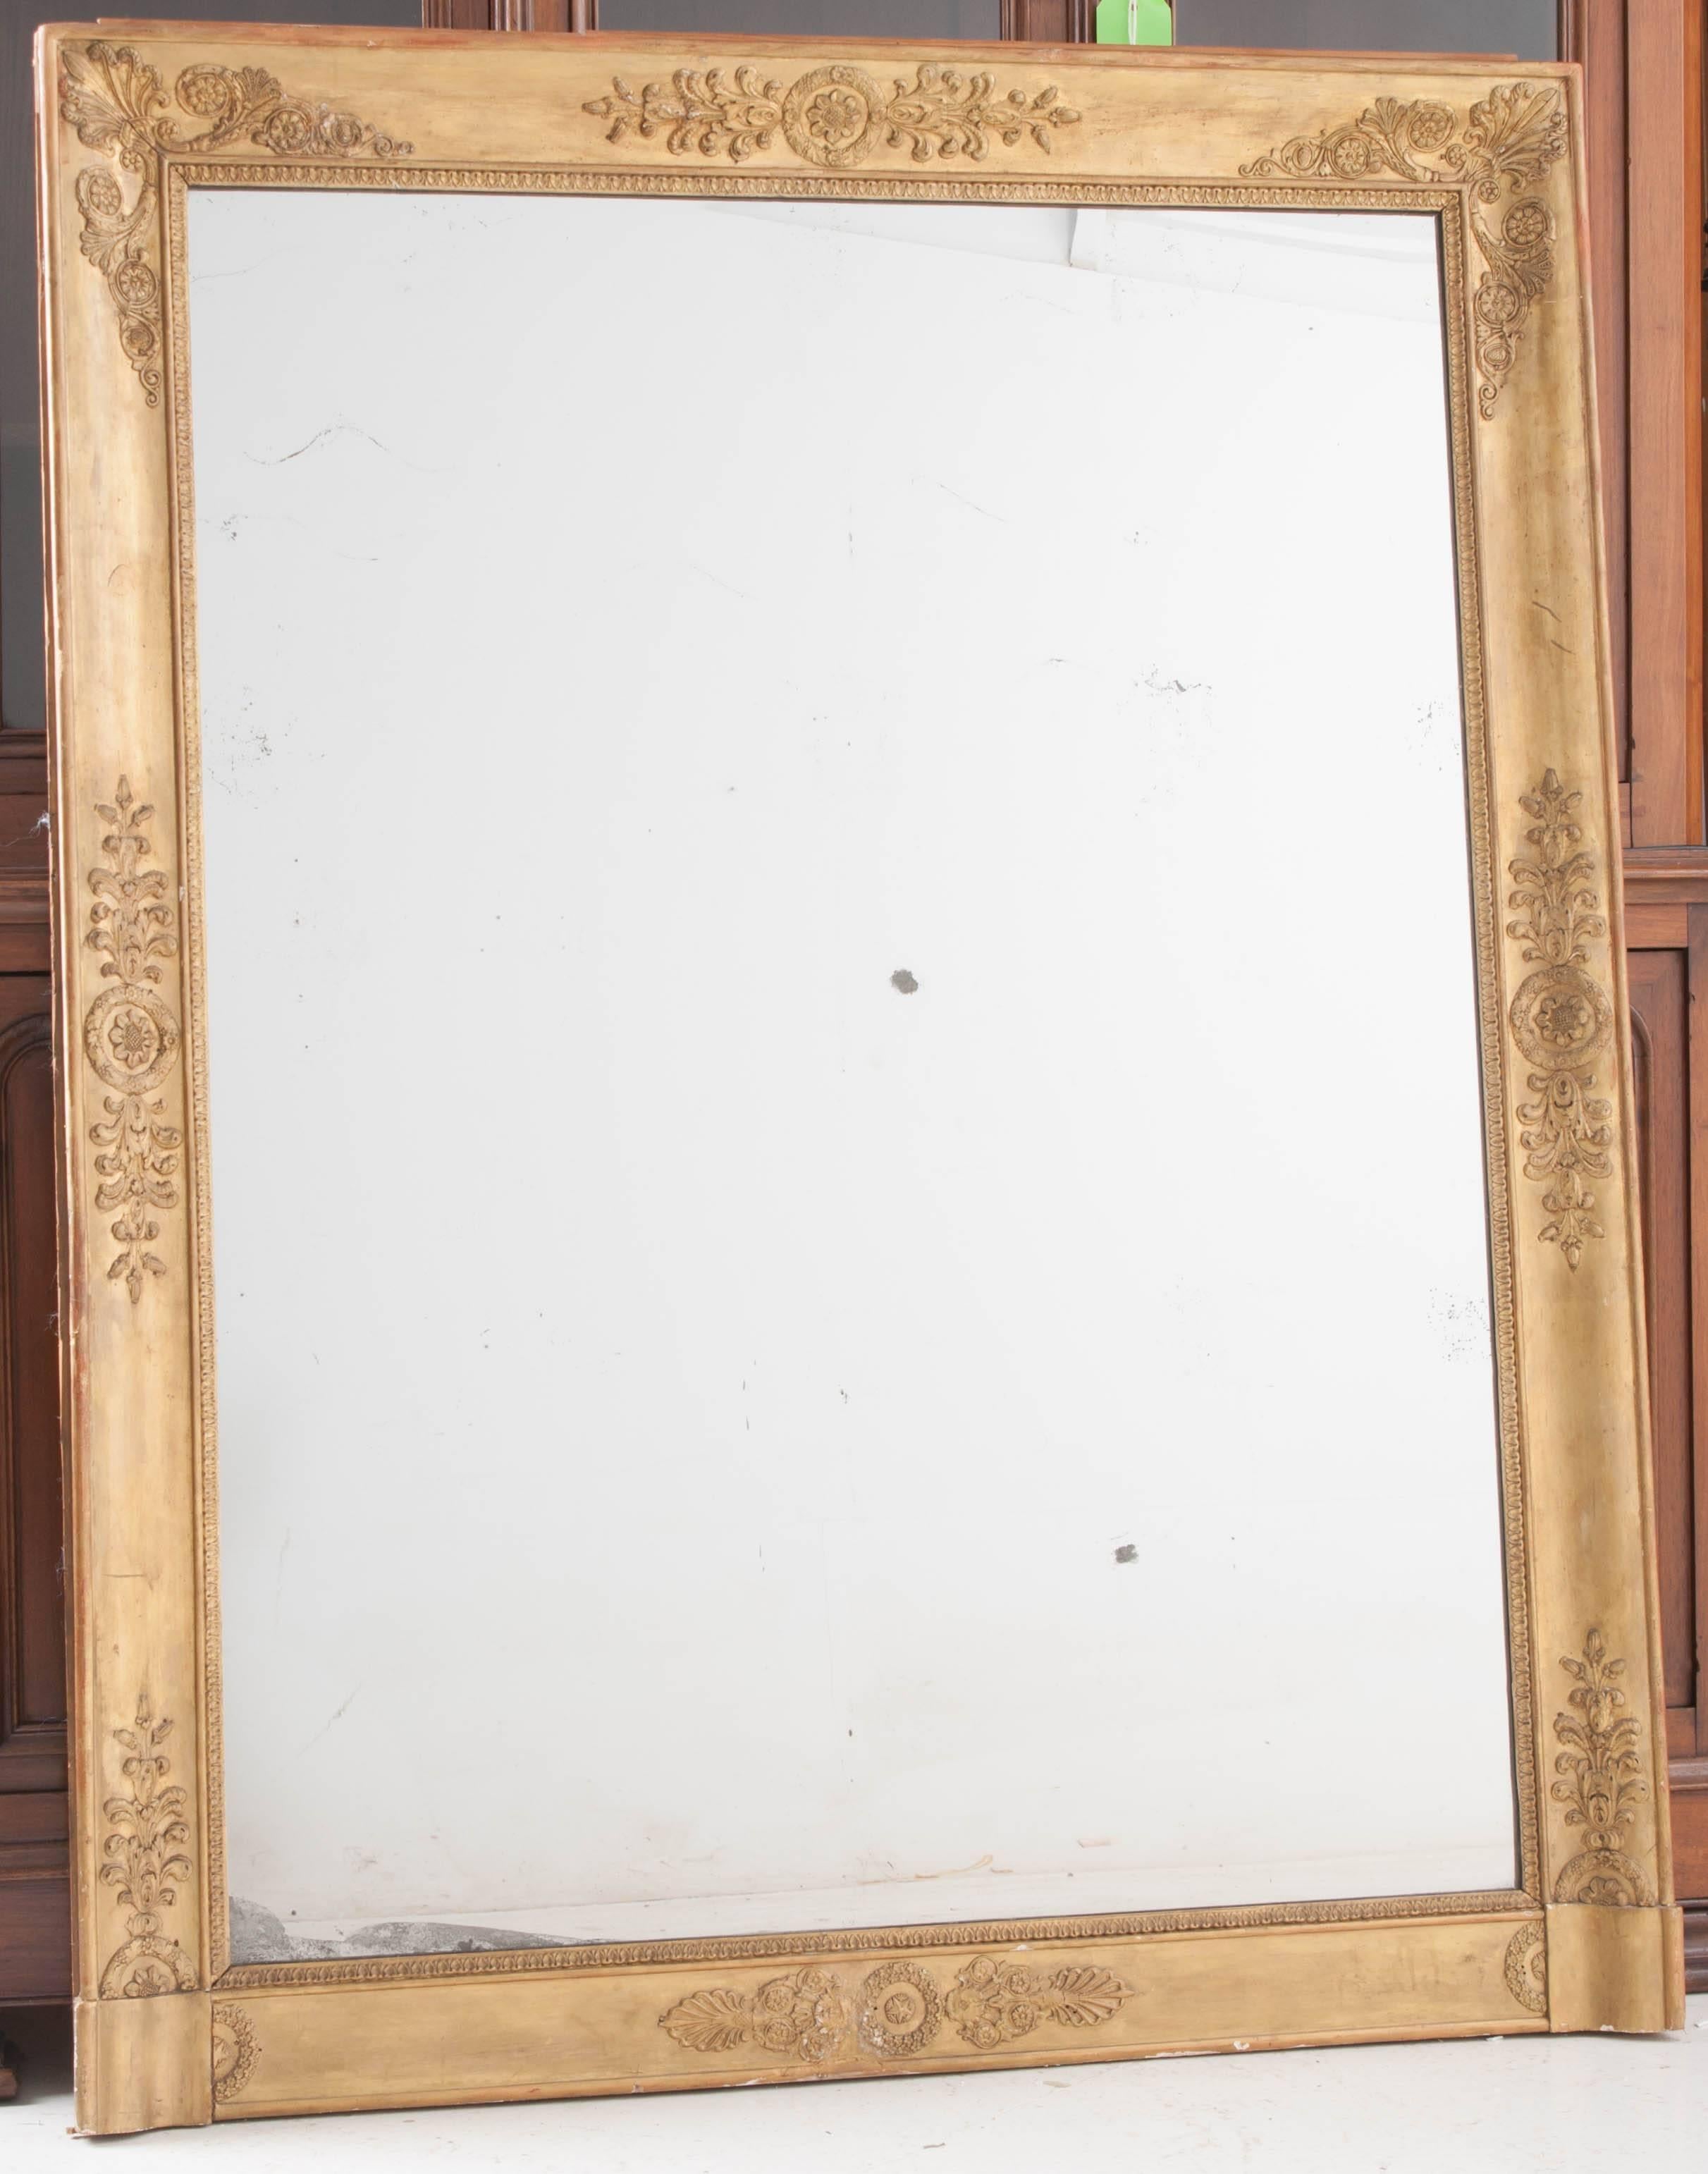 Dieser Empire-Spiegel aus dem 19. Jahrhundert besticht durch seine exquisite Goldvergoldung und die neoklassizistischen Schnitzereien, die das Originalglas umgeben. Das originale Quecksilberglas ist wunderschön stockfleckig und funkelt. Eine warme